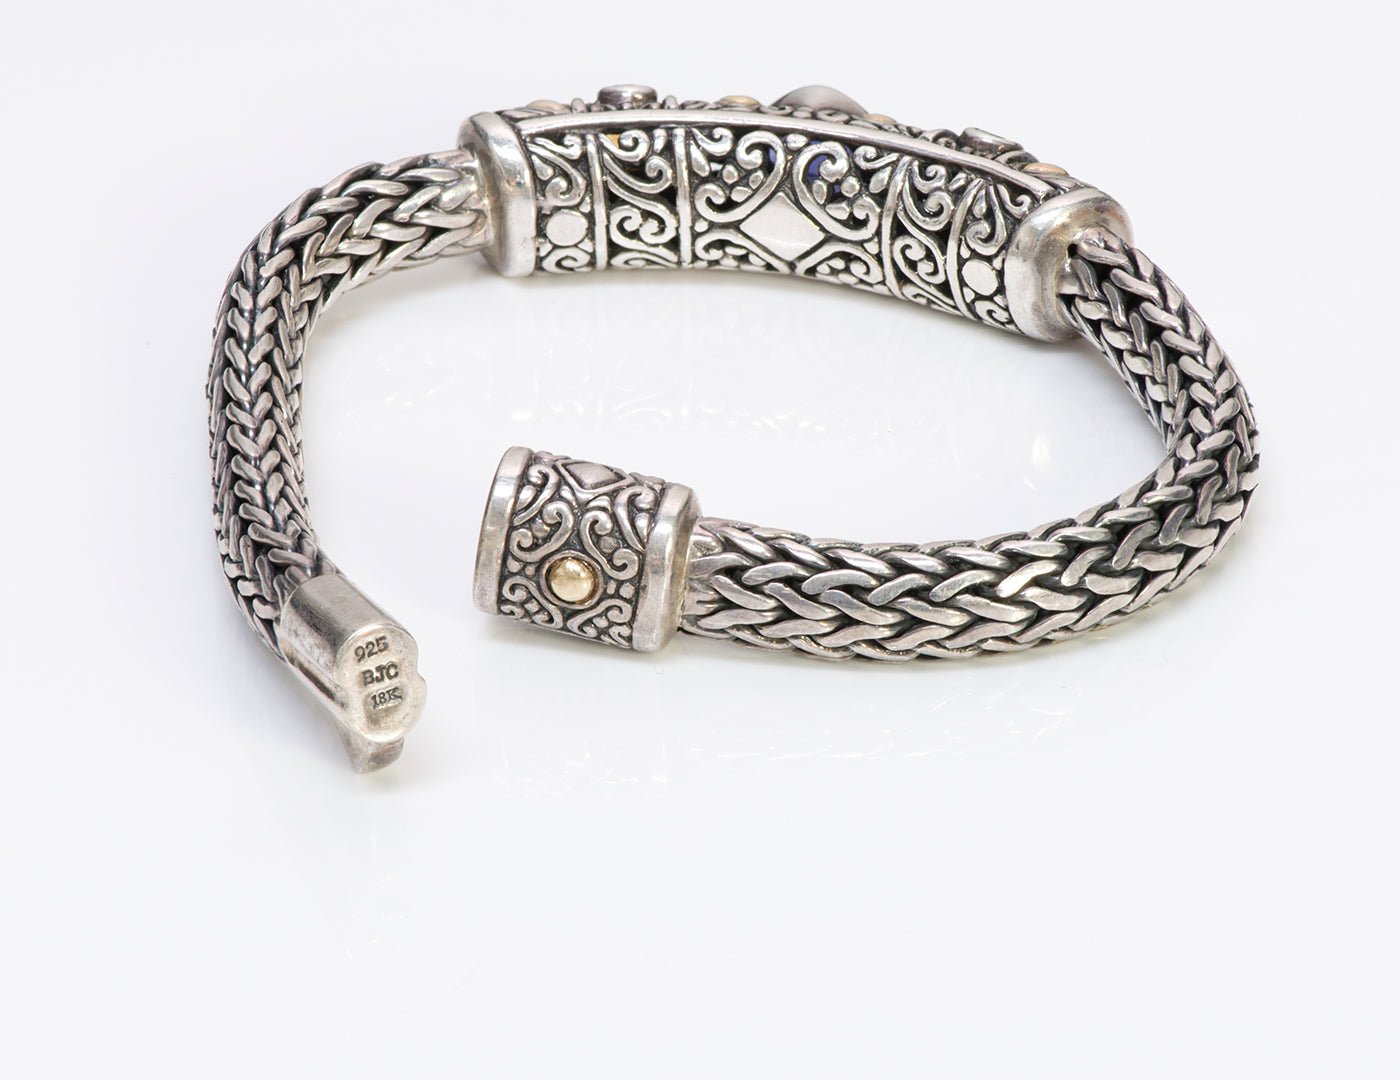 Samuel Benham BJC Gold & Sterling Silver Bracelet